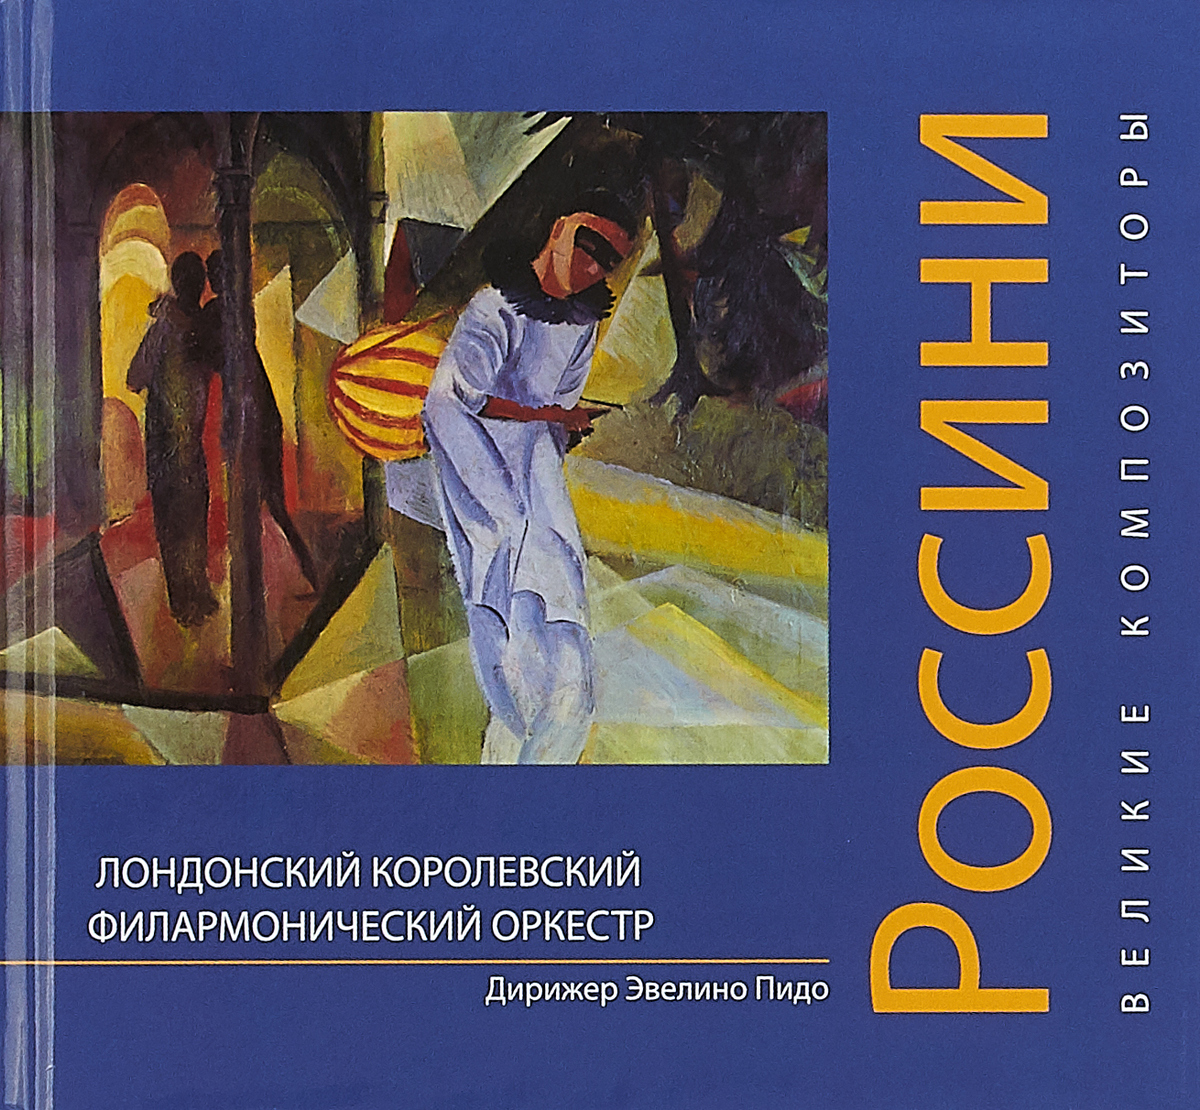 Книга великие композиторы. Россини Джоаккино книги. Лучшие произведения Россини.